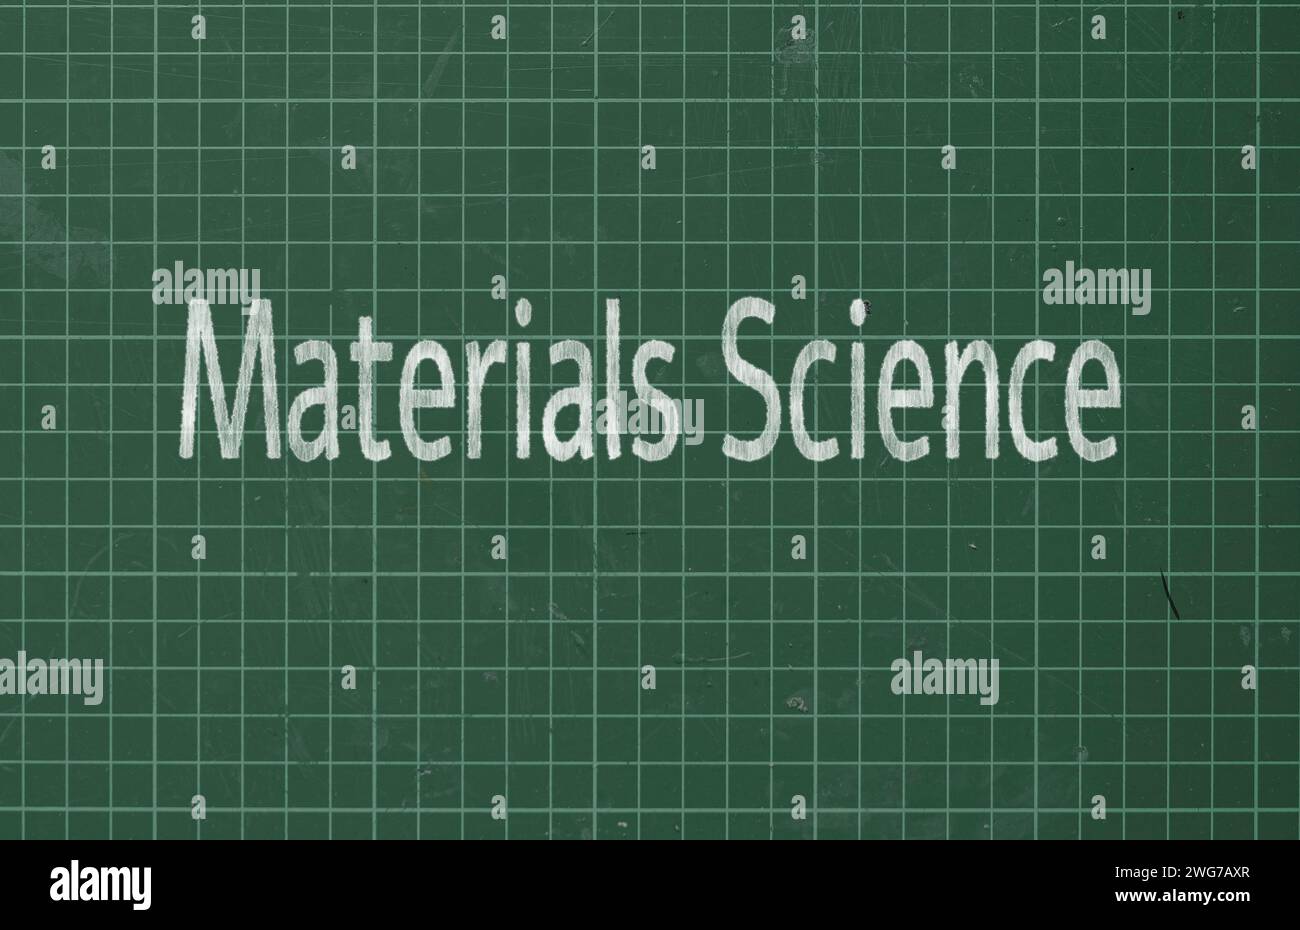 Materialwissenschaft: Untersucht die Eigenschaften, Verarbeitung und Anwendung von Werkstoffen, die in der Technik verwendet werden, von Metallen bis zu Polymeren. Stockfoto